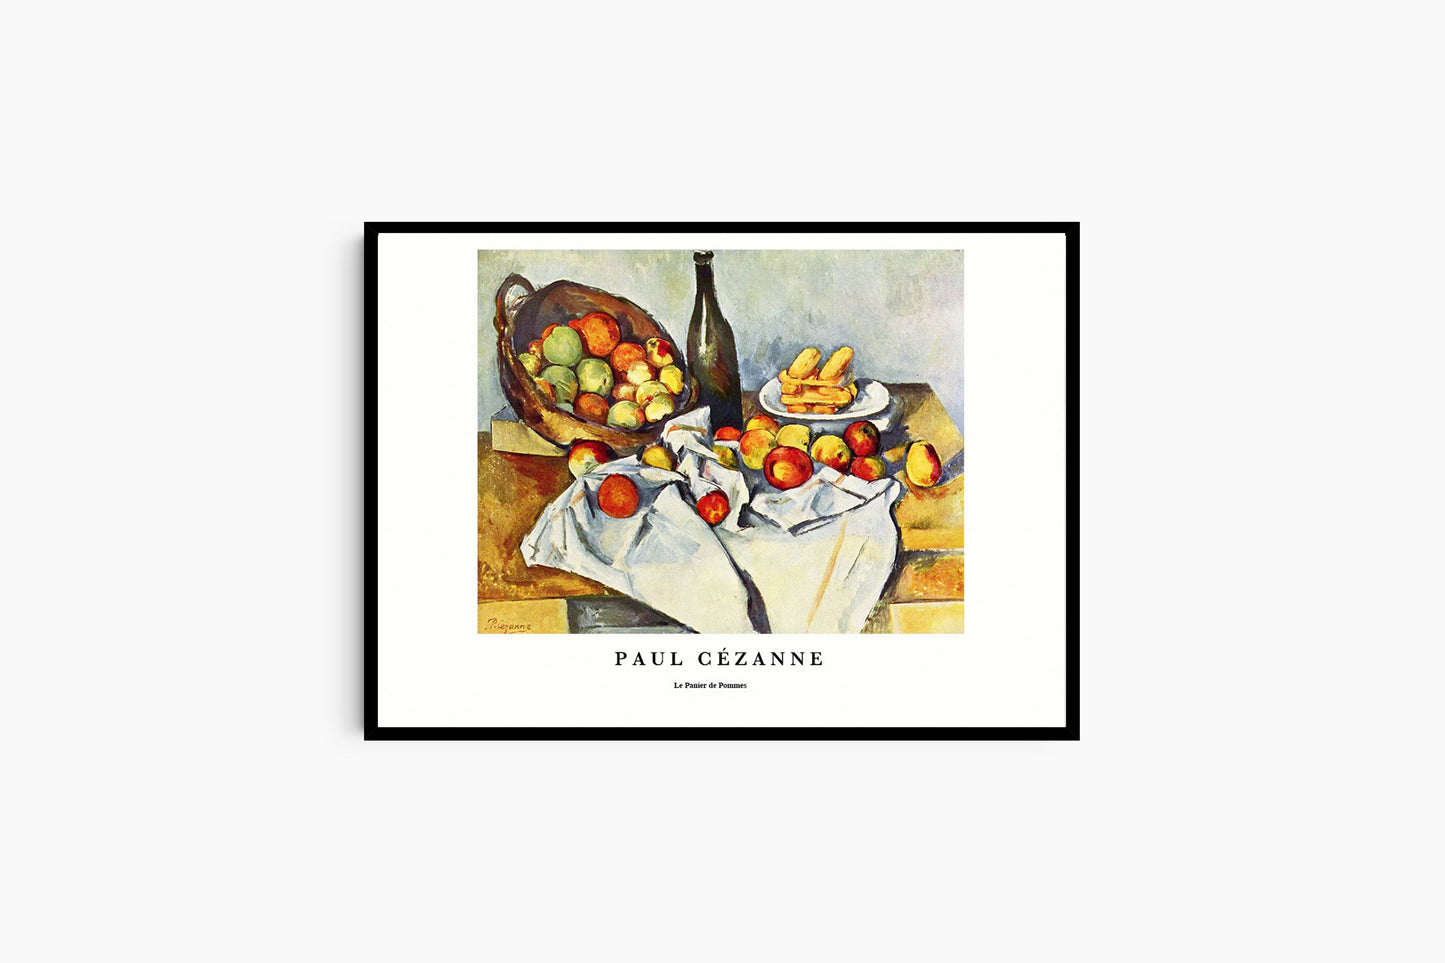 Paul Cézanne - Le Panier des Pommes Poster